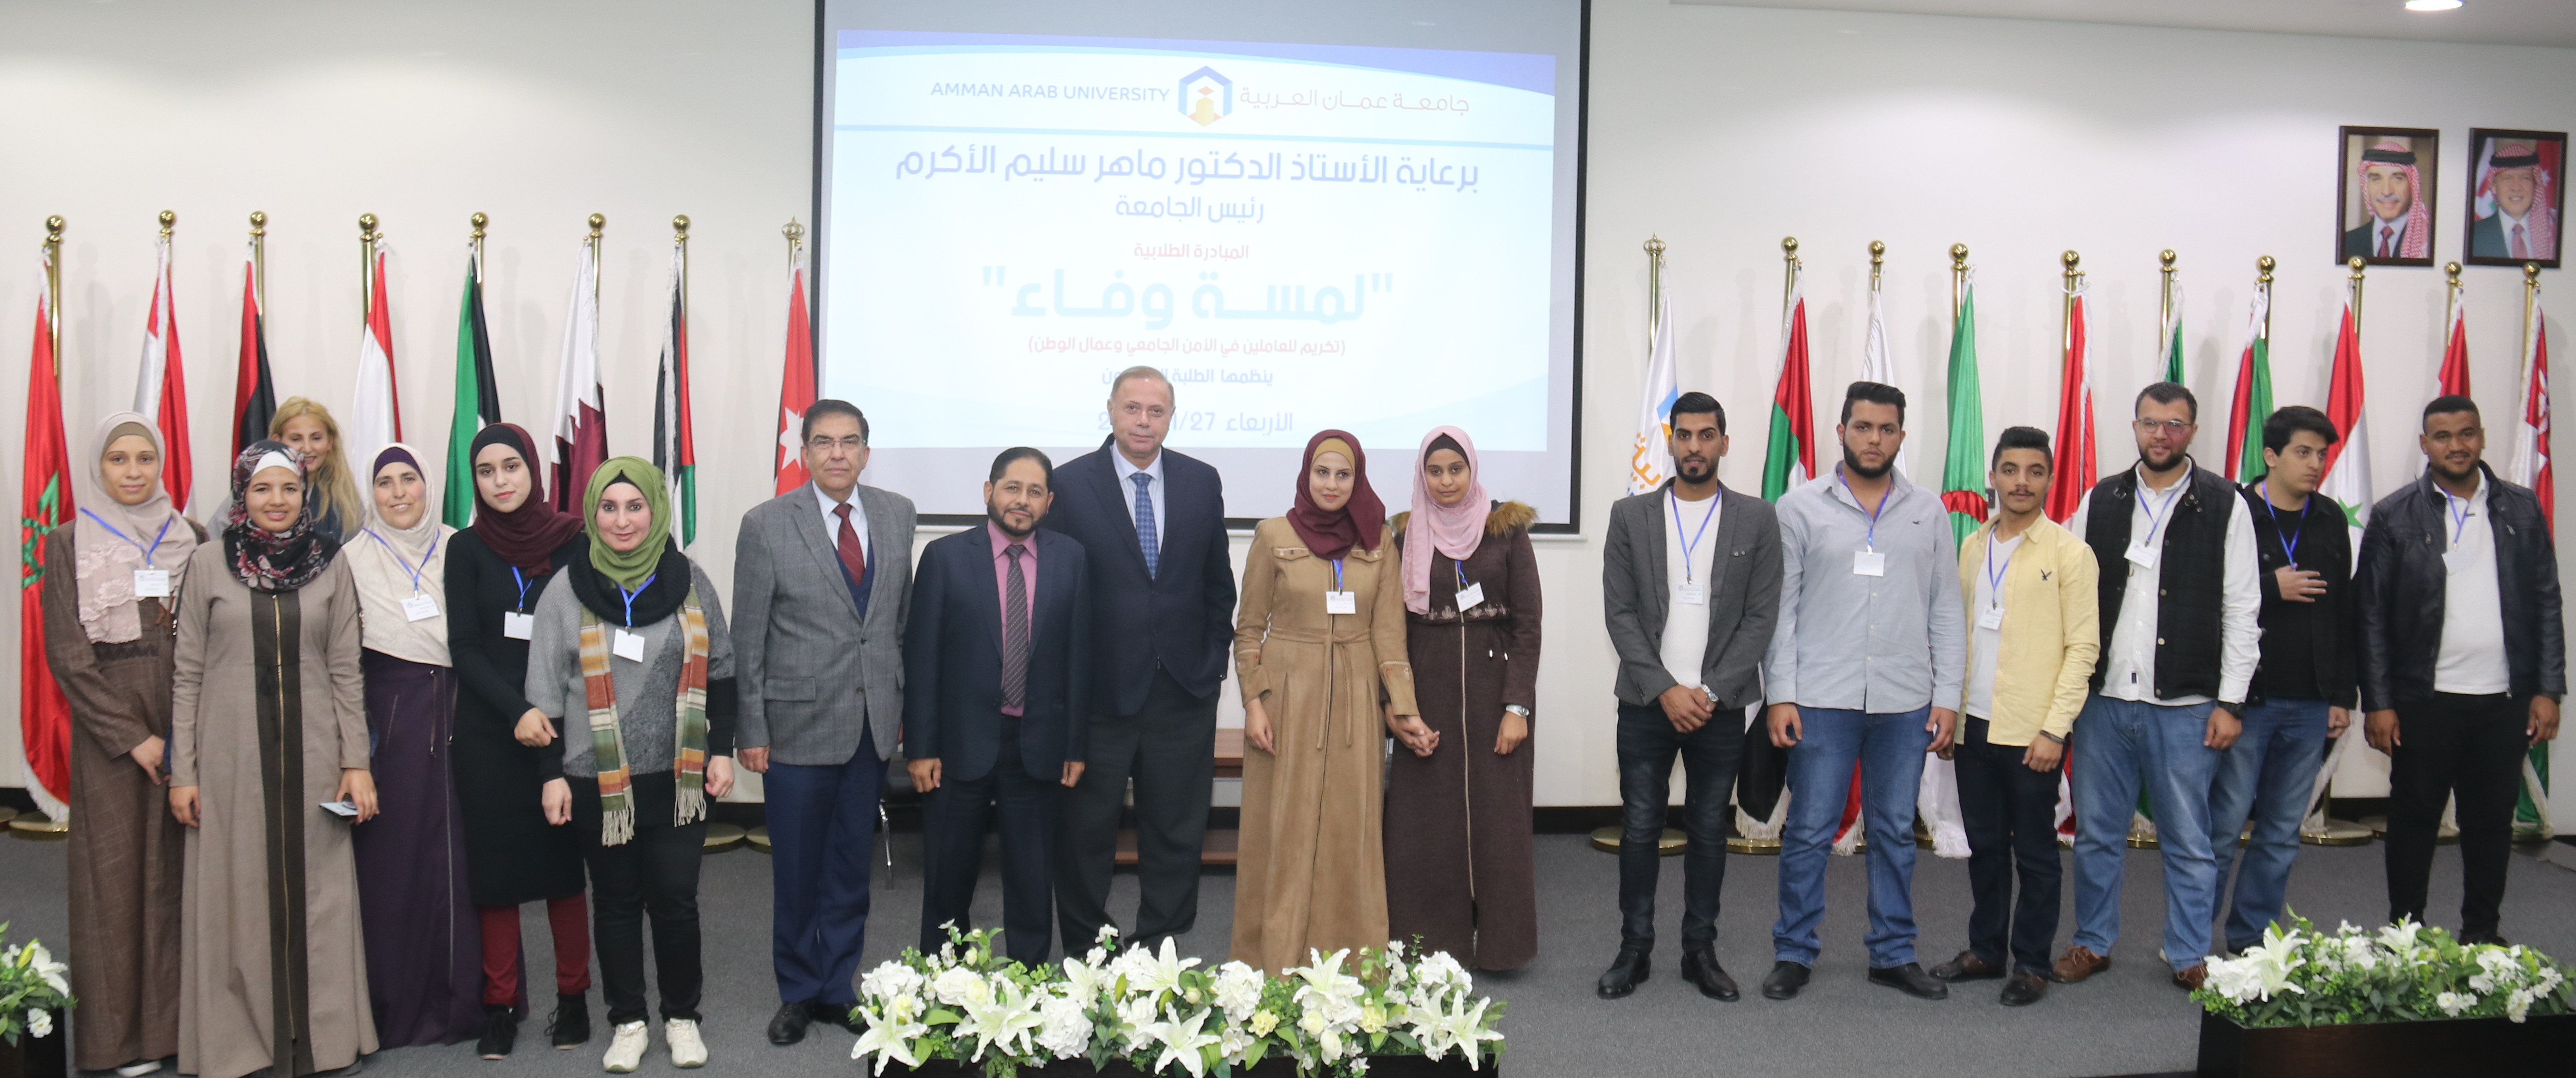 "لمسة وفاء" مبادرة من طلبة "عمان العربية" لموظفي الامن الجامعي وعمال الوطن 